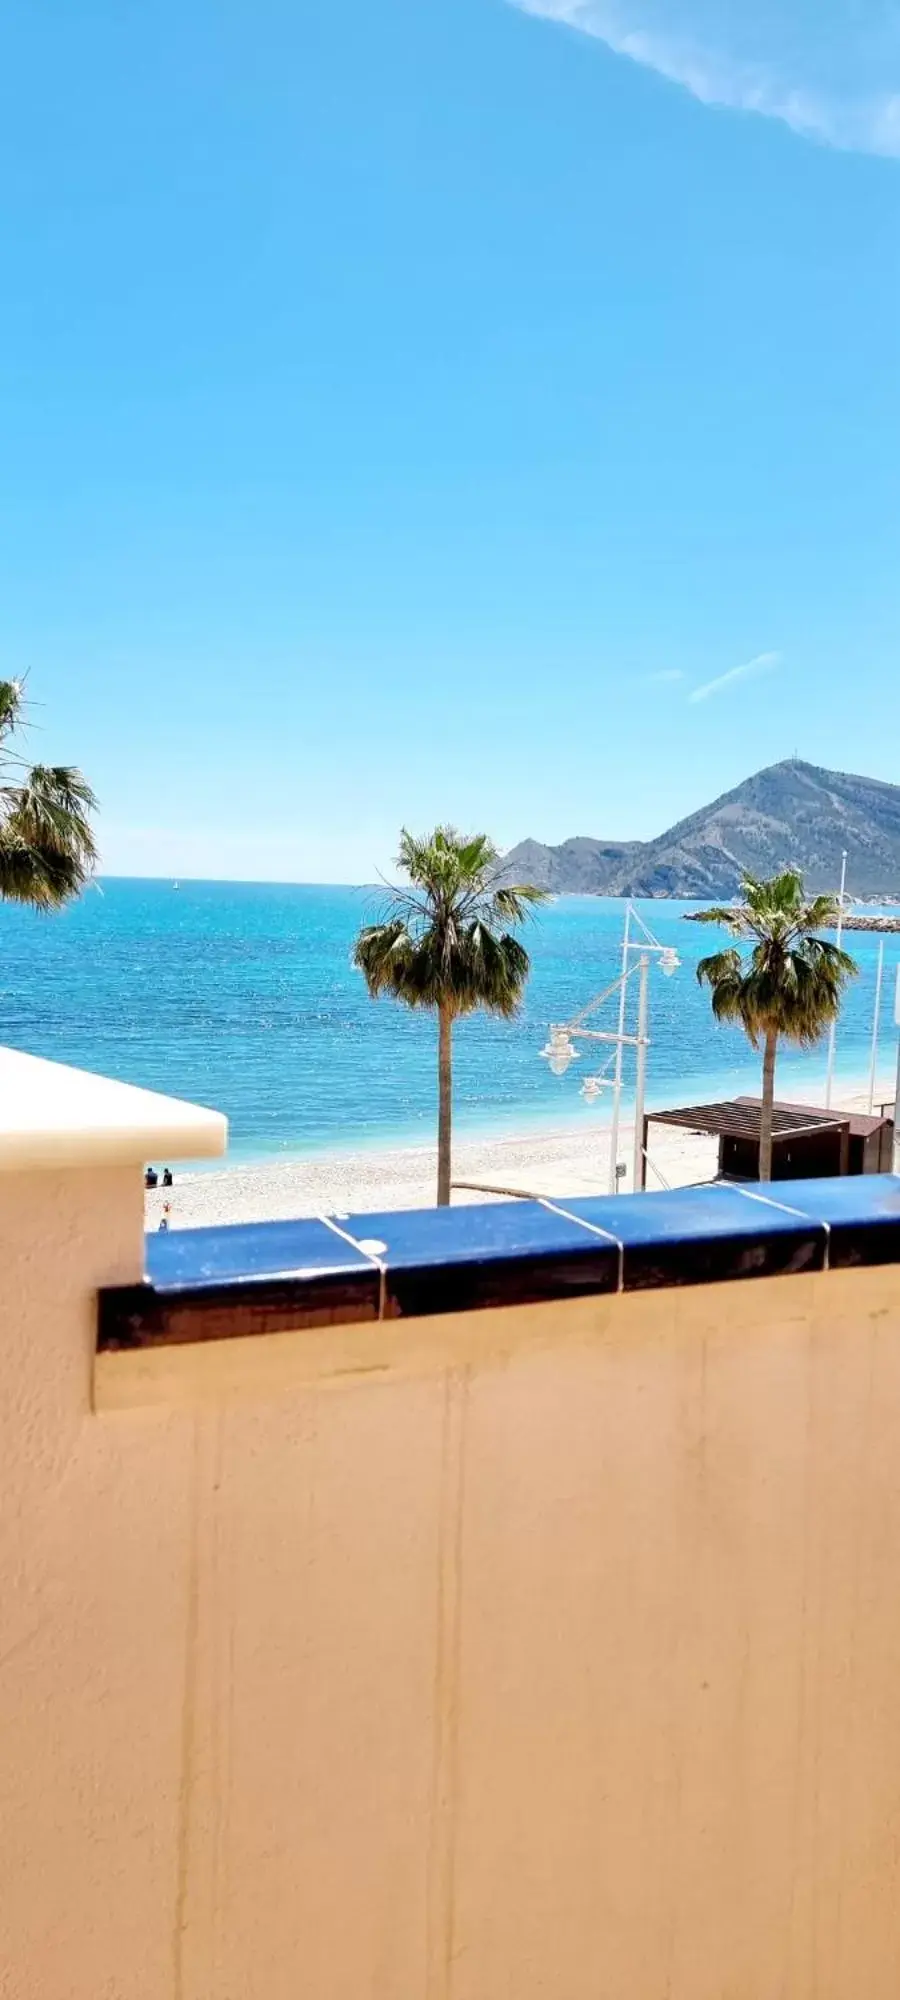 Balcony/Terrace, Sea View in Hotel Altaia